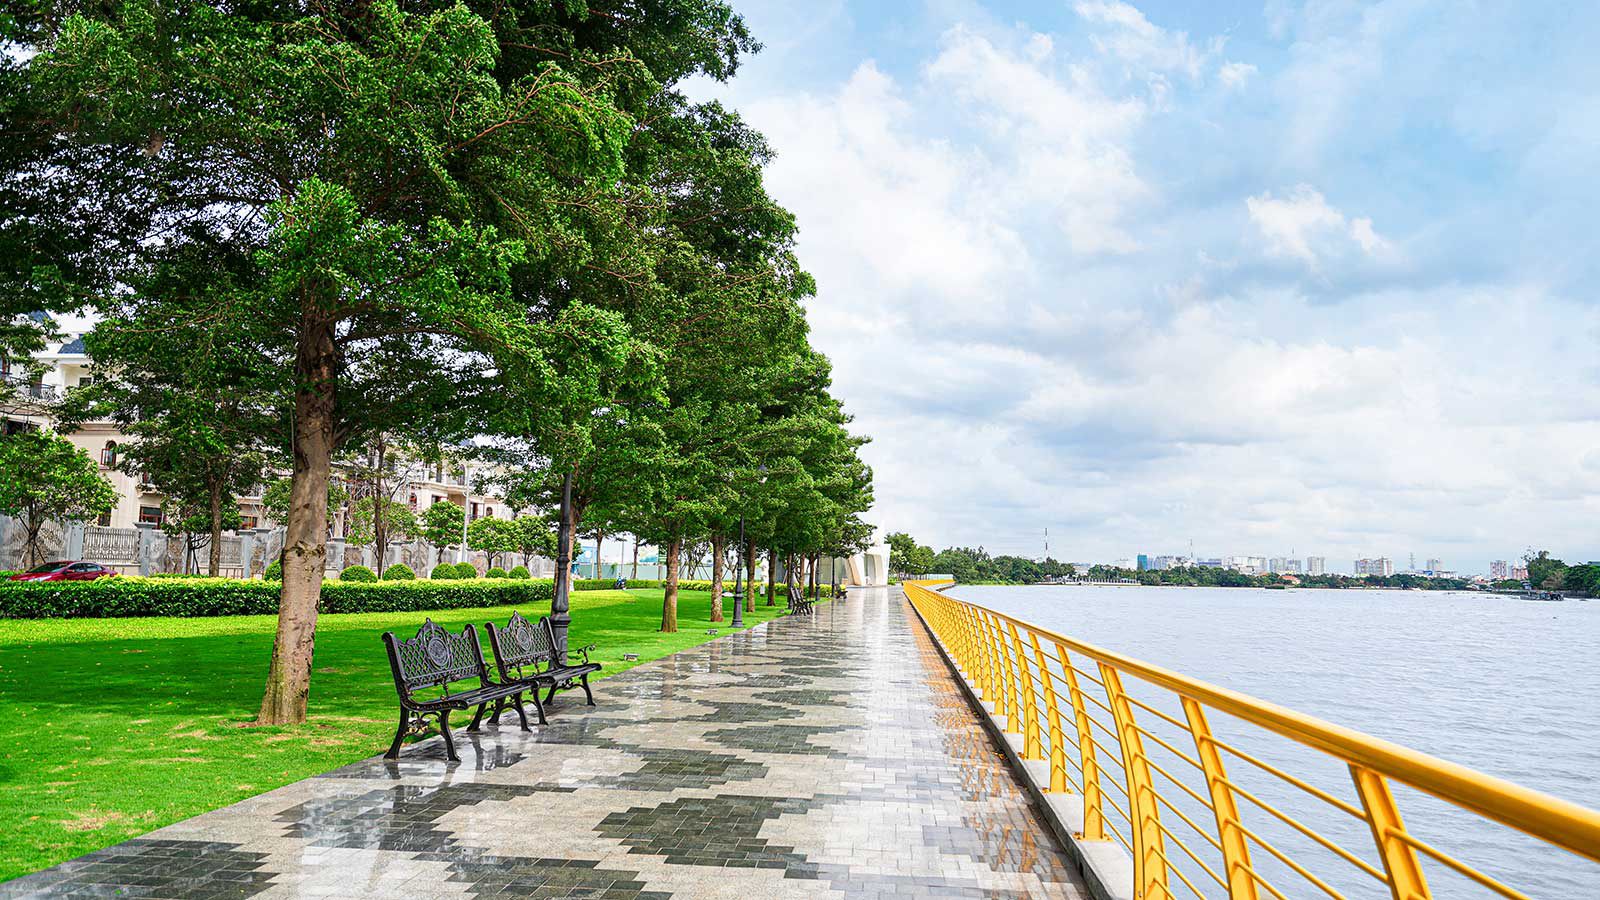 Công viên và đường dạo bộ chạy dọc bờ sông Sài Gòn dài 3.4km